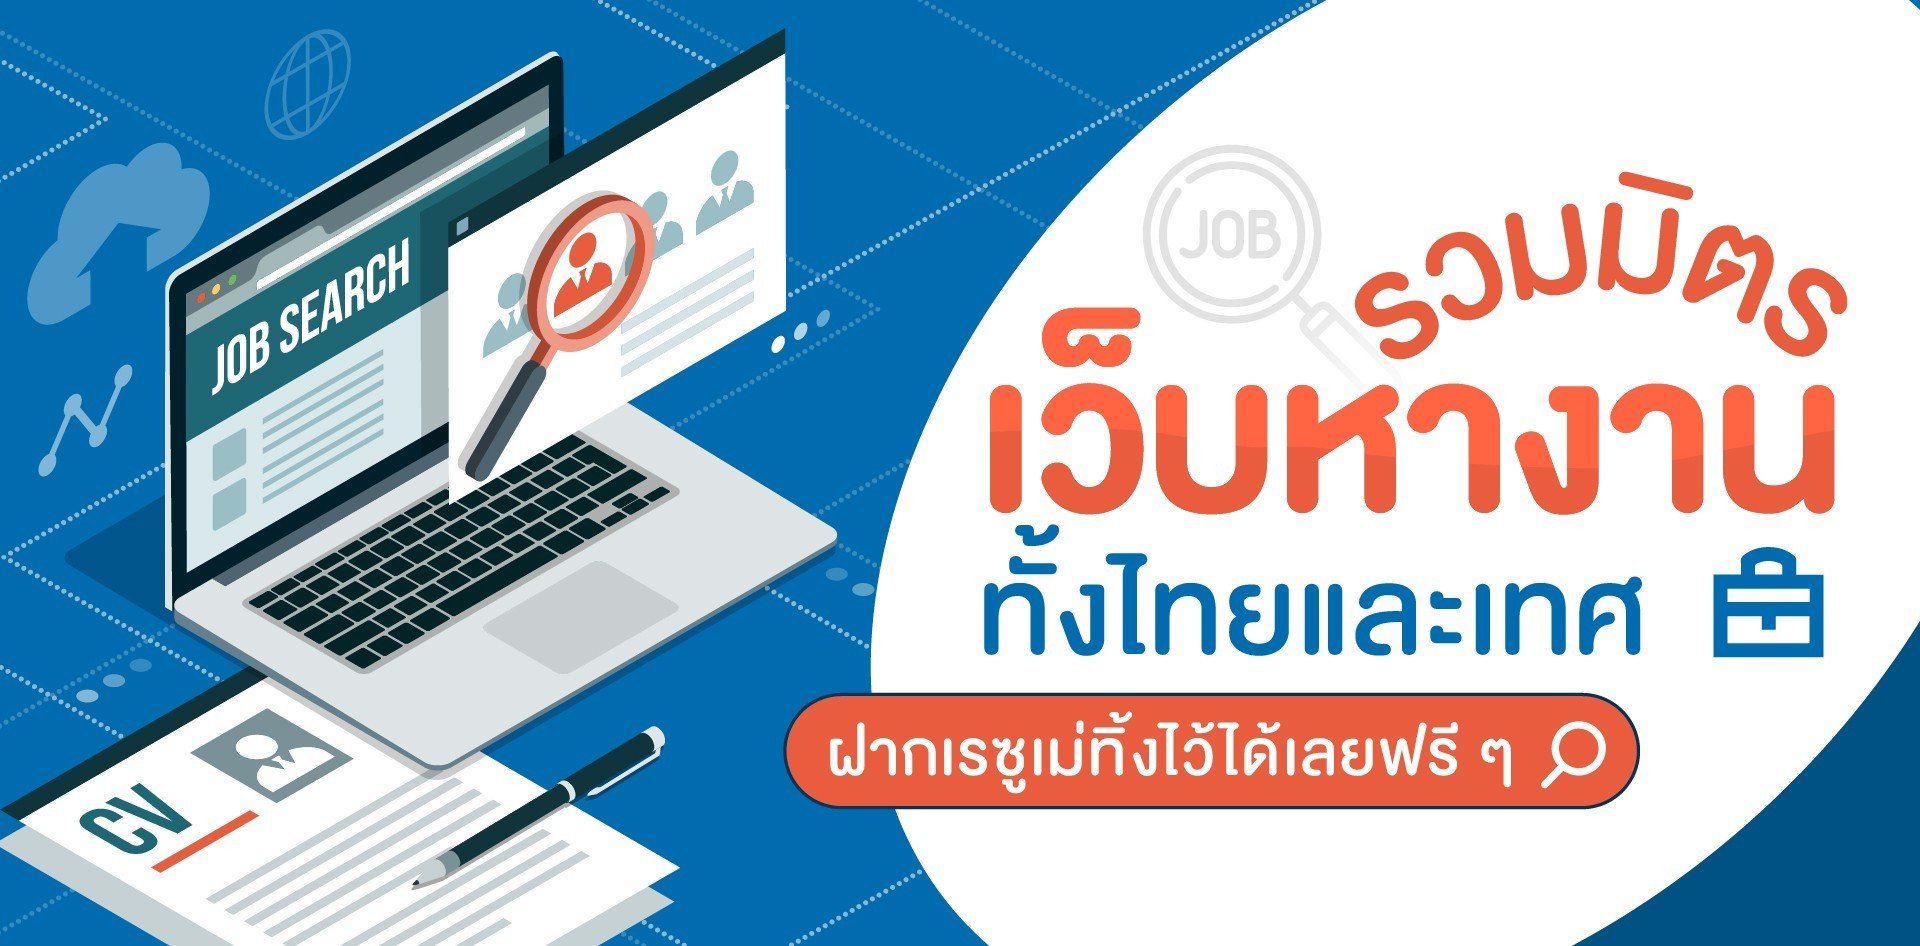 รวมเว็บสมัครงาน 'เว็บหางาน' ทั้งไทยและเทศ ฝากเรซูเม่ได้เลยฟรี ๆ